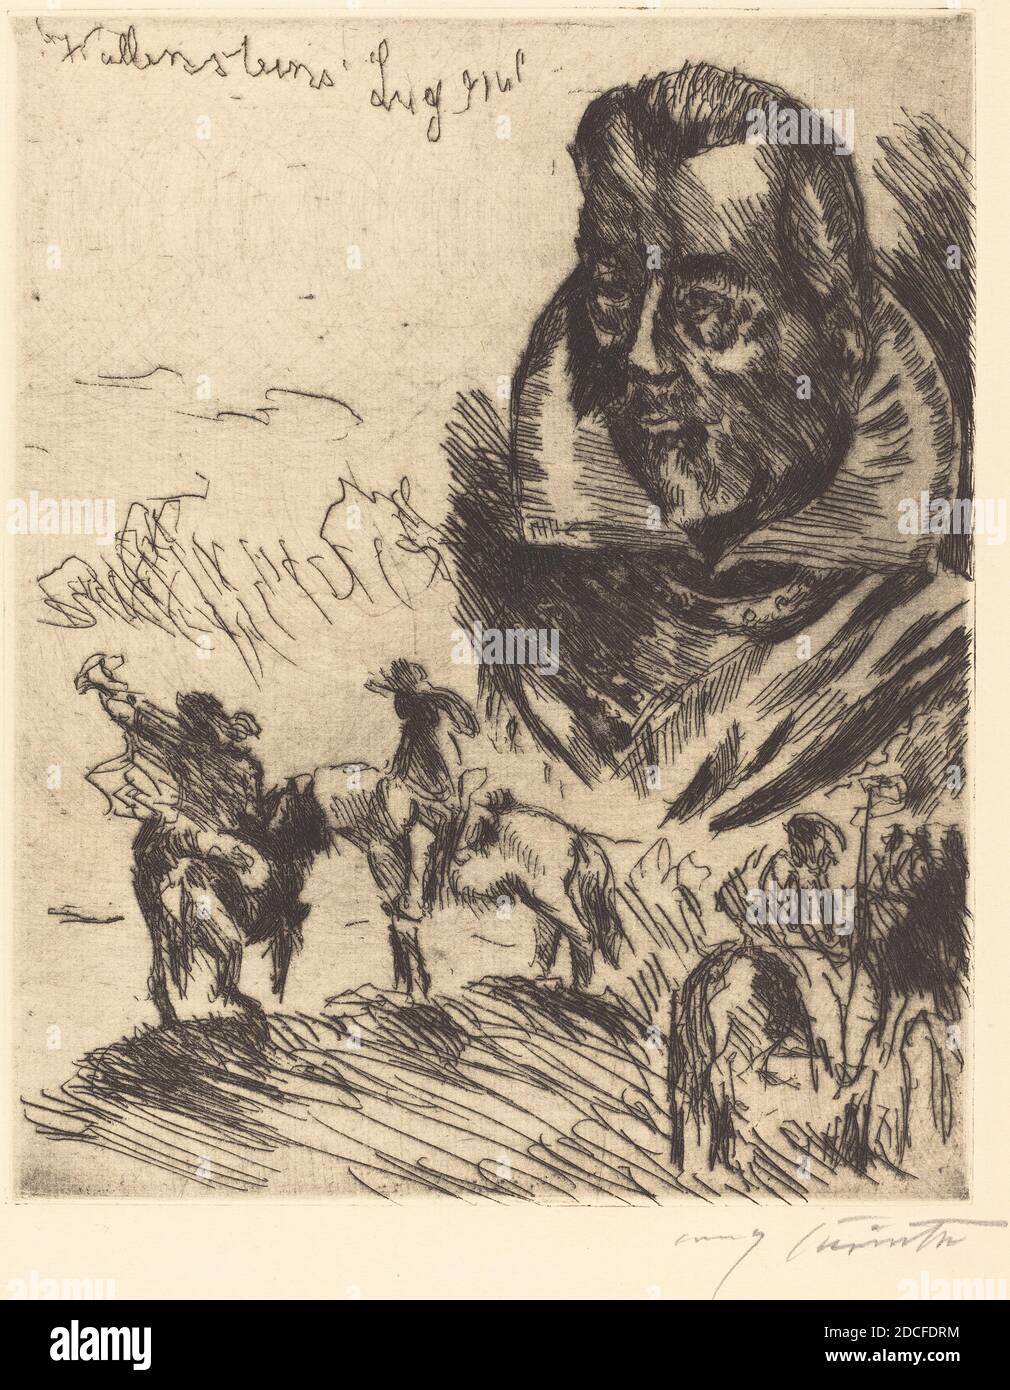 Lovis Corinth, (artiste), allemand, 1858 - 1925, Titelbild (page de titre), Wallensteins Lager (Wallenstein's Camp), (série), 1923, gravure en noir sur papier couté, plaque: 25.8 x 20.9 cm (10 3/16 x 8 1/4 in.), feuille: 40.2 x 29 cm (15 13/16 x 11 7/16 in Banque D'Images